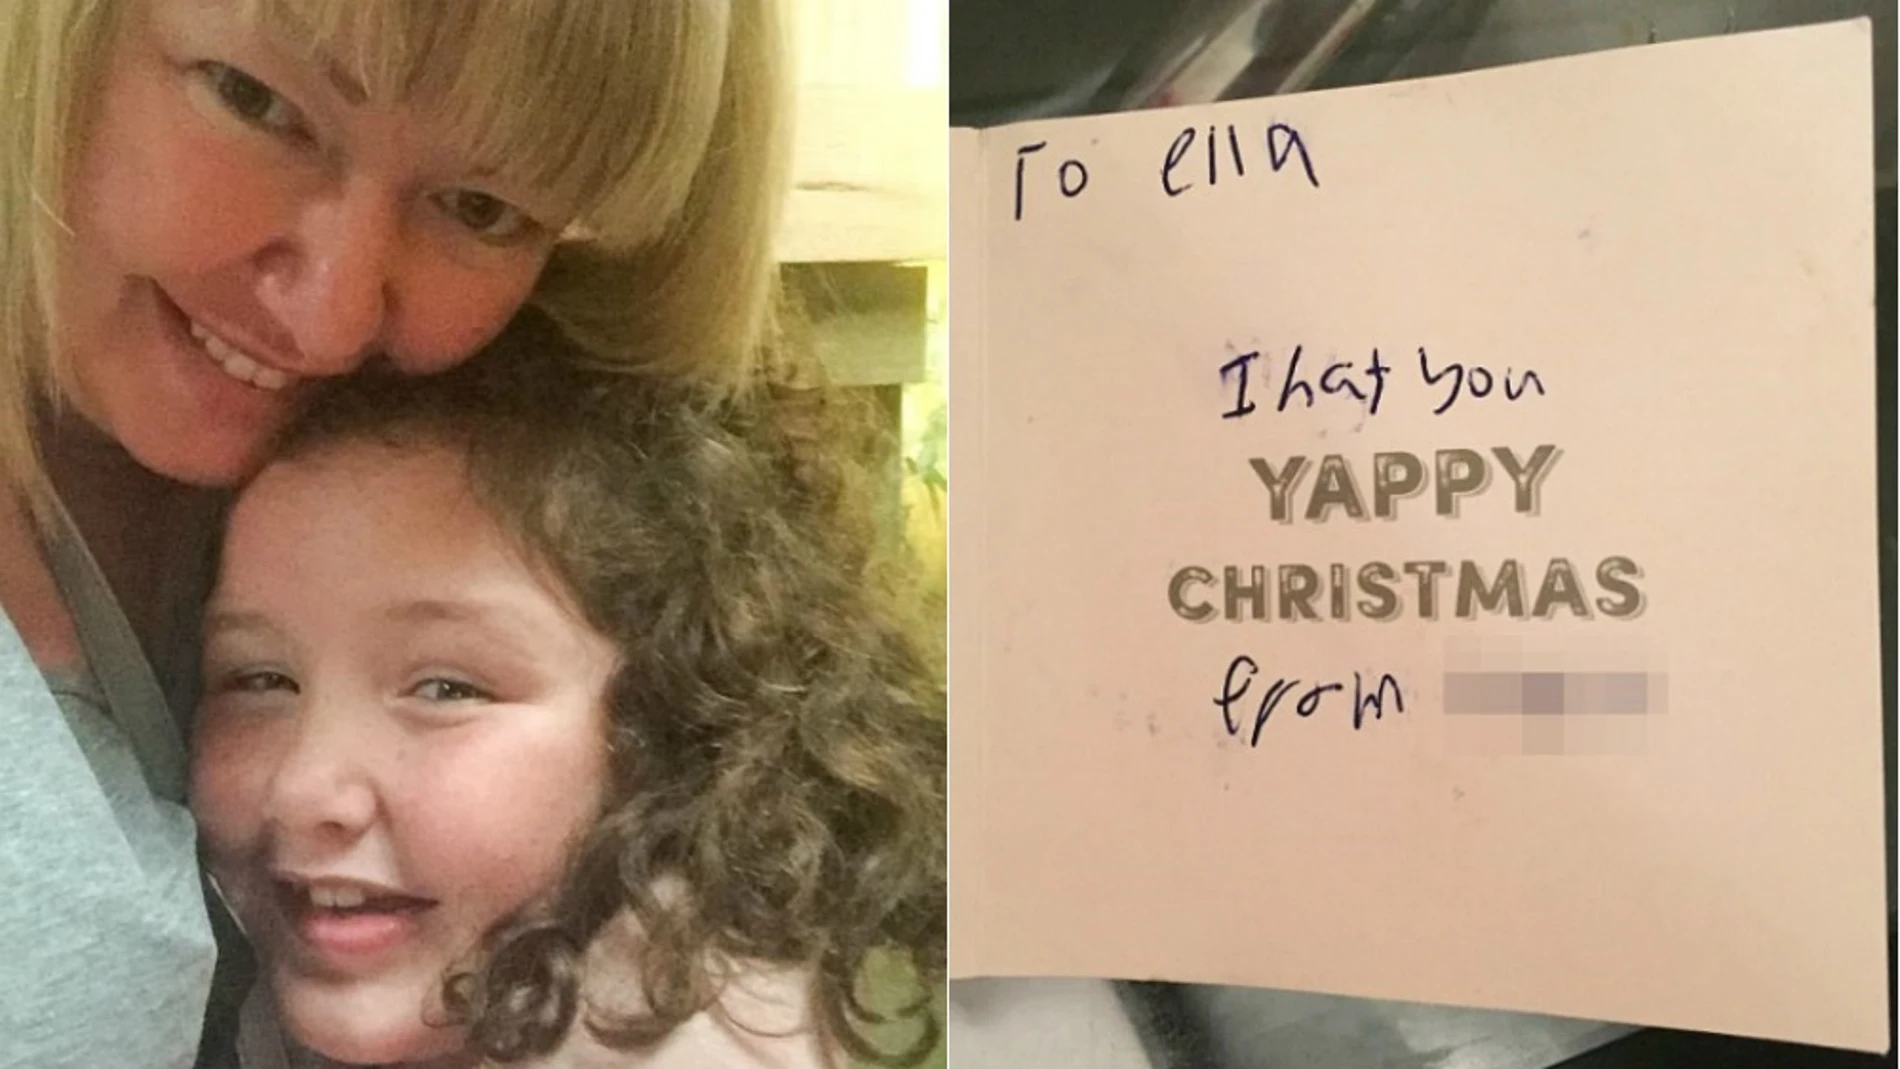 La pequeña Ella junto a su madre Jenna Singleton y la tarjeta de felicitación navideña